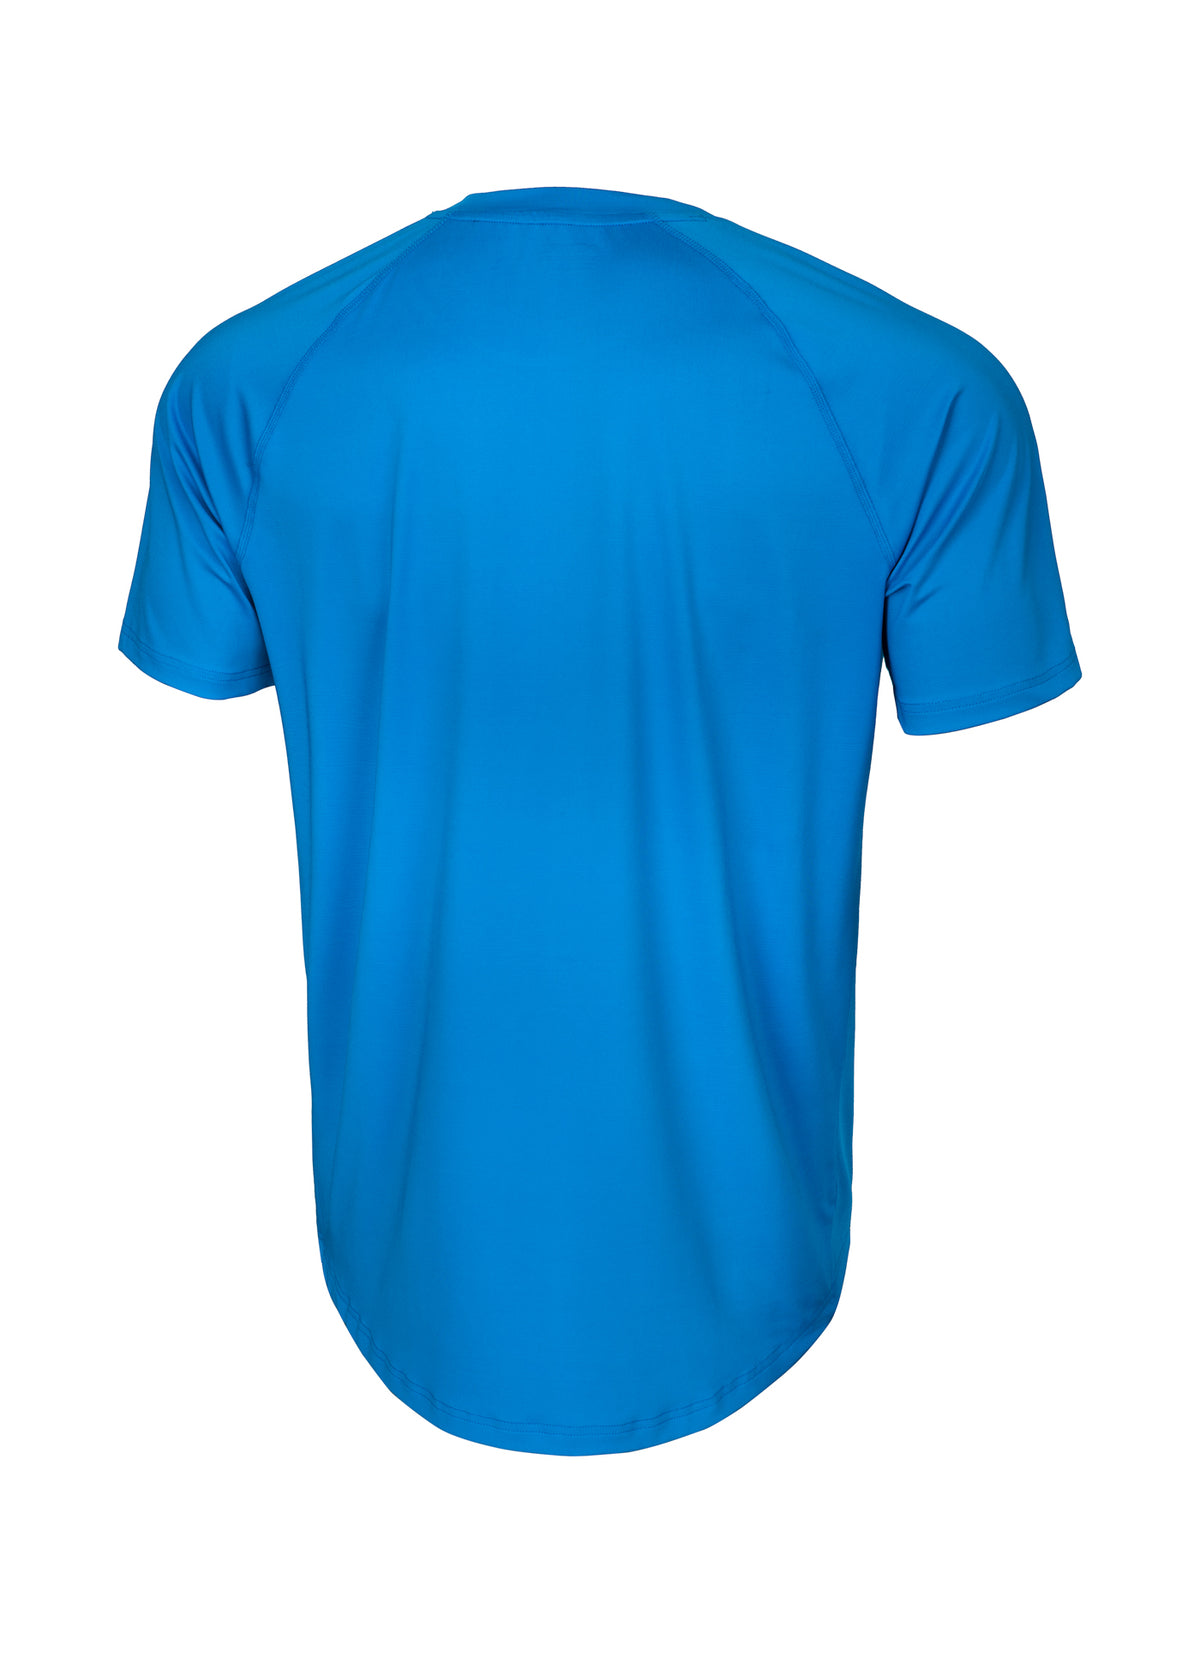 HILLTOP 190 Blue Technical T-shirt - Pitbullstore.eu